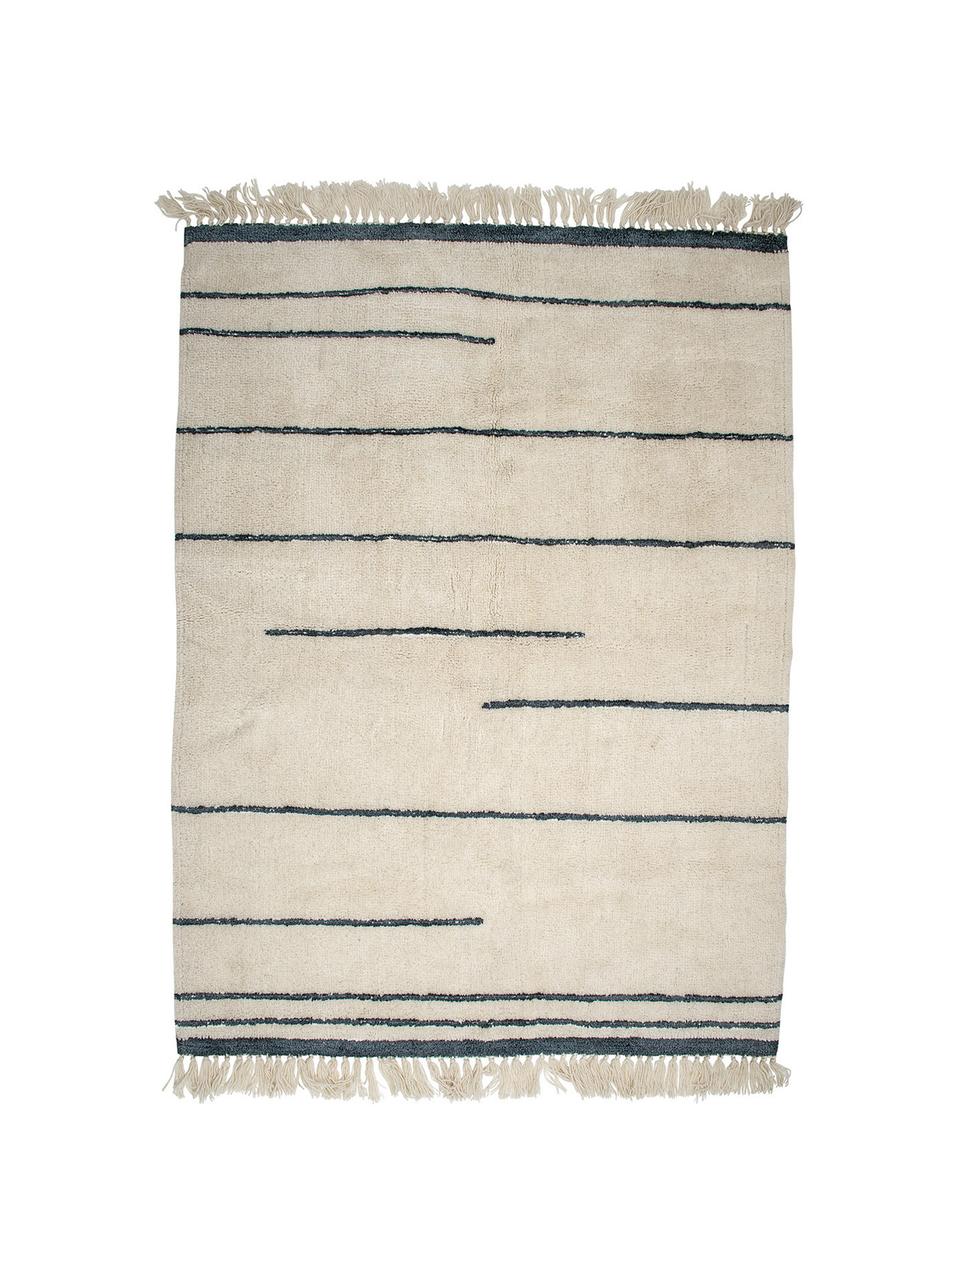 Tappeto in lana beige / grigia con frange Nora, Beige, antracite, Larg. 140 x Lung. 200 cm (taglia S)